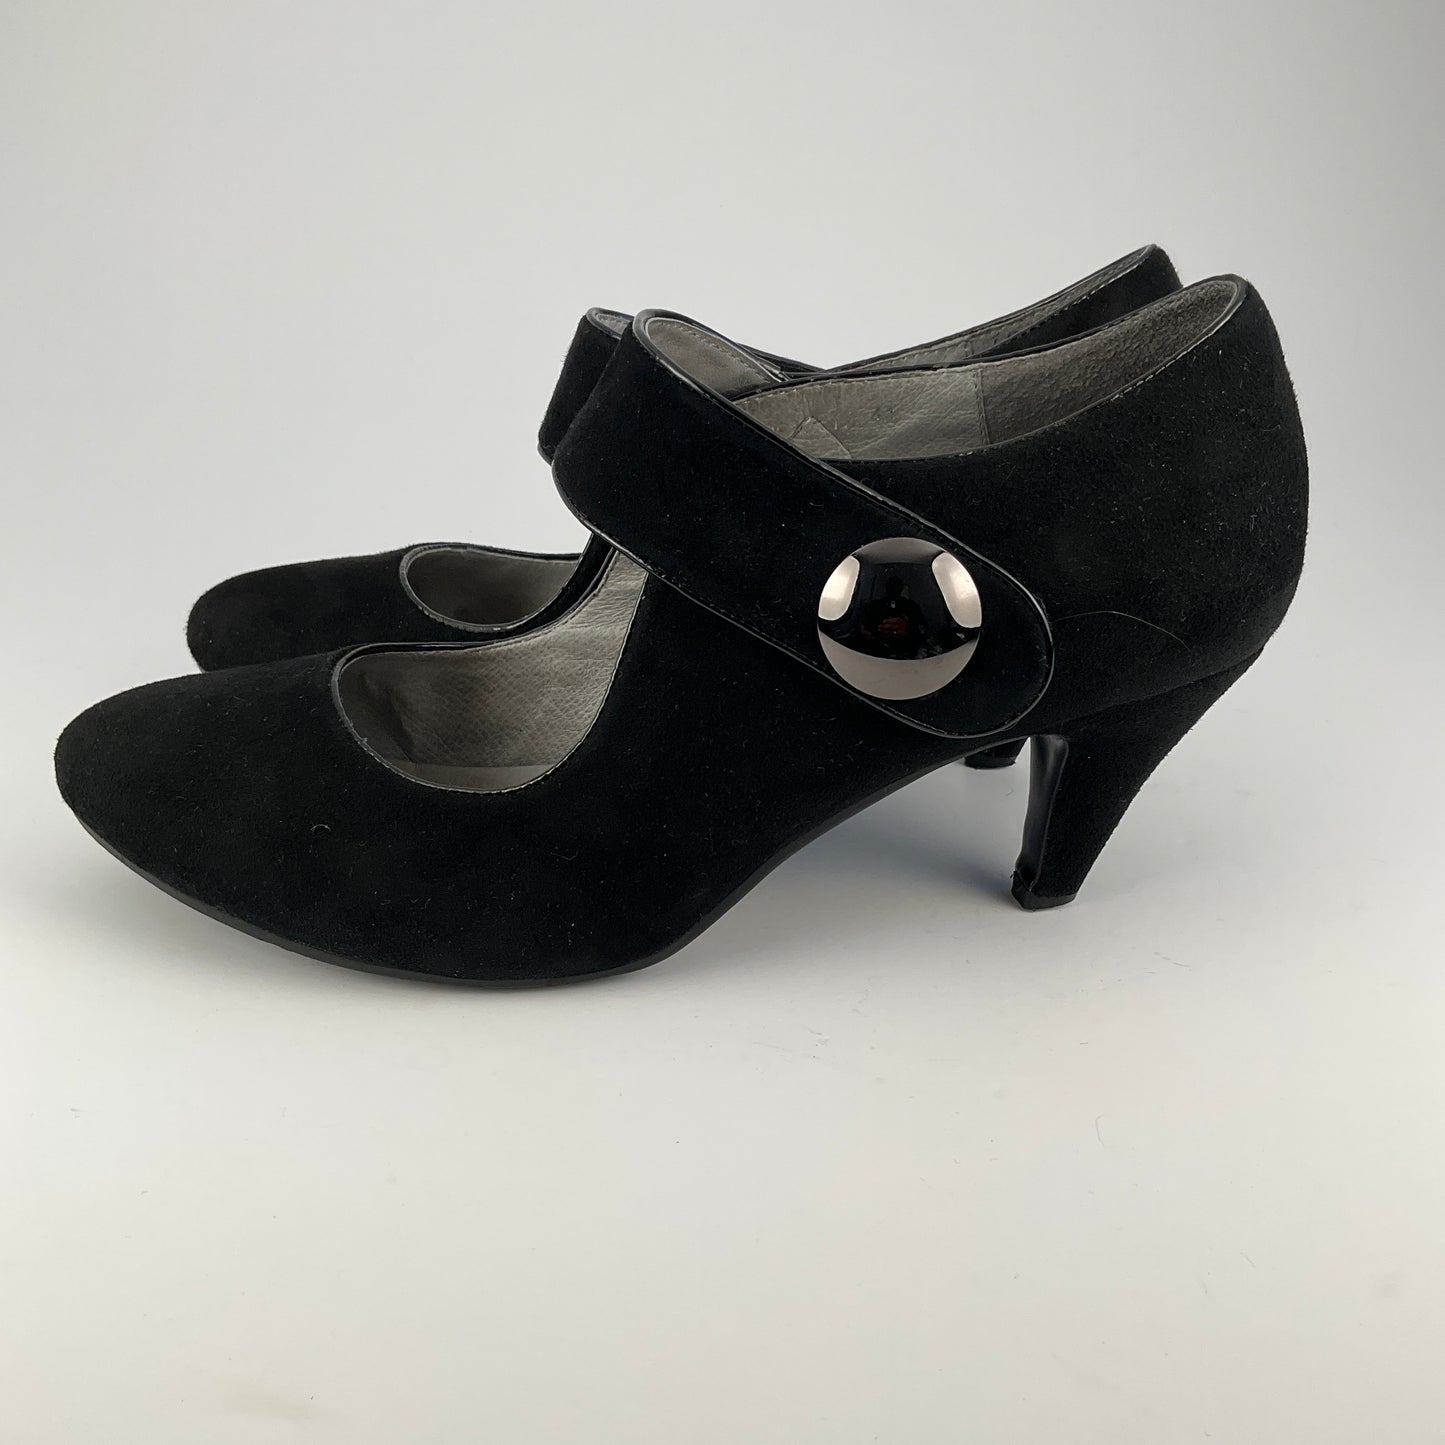 Magnini - Mary Jane Shoes - Size 41